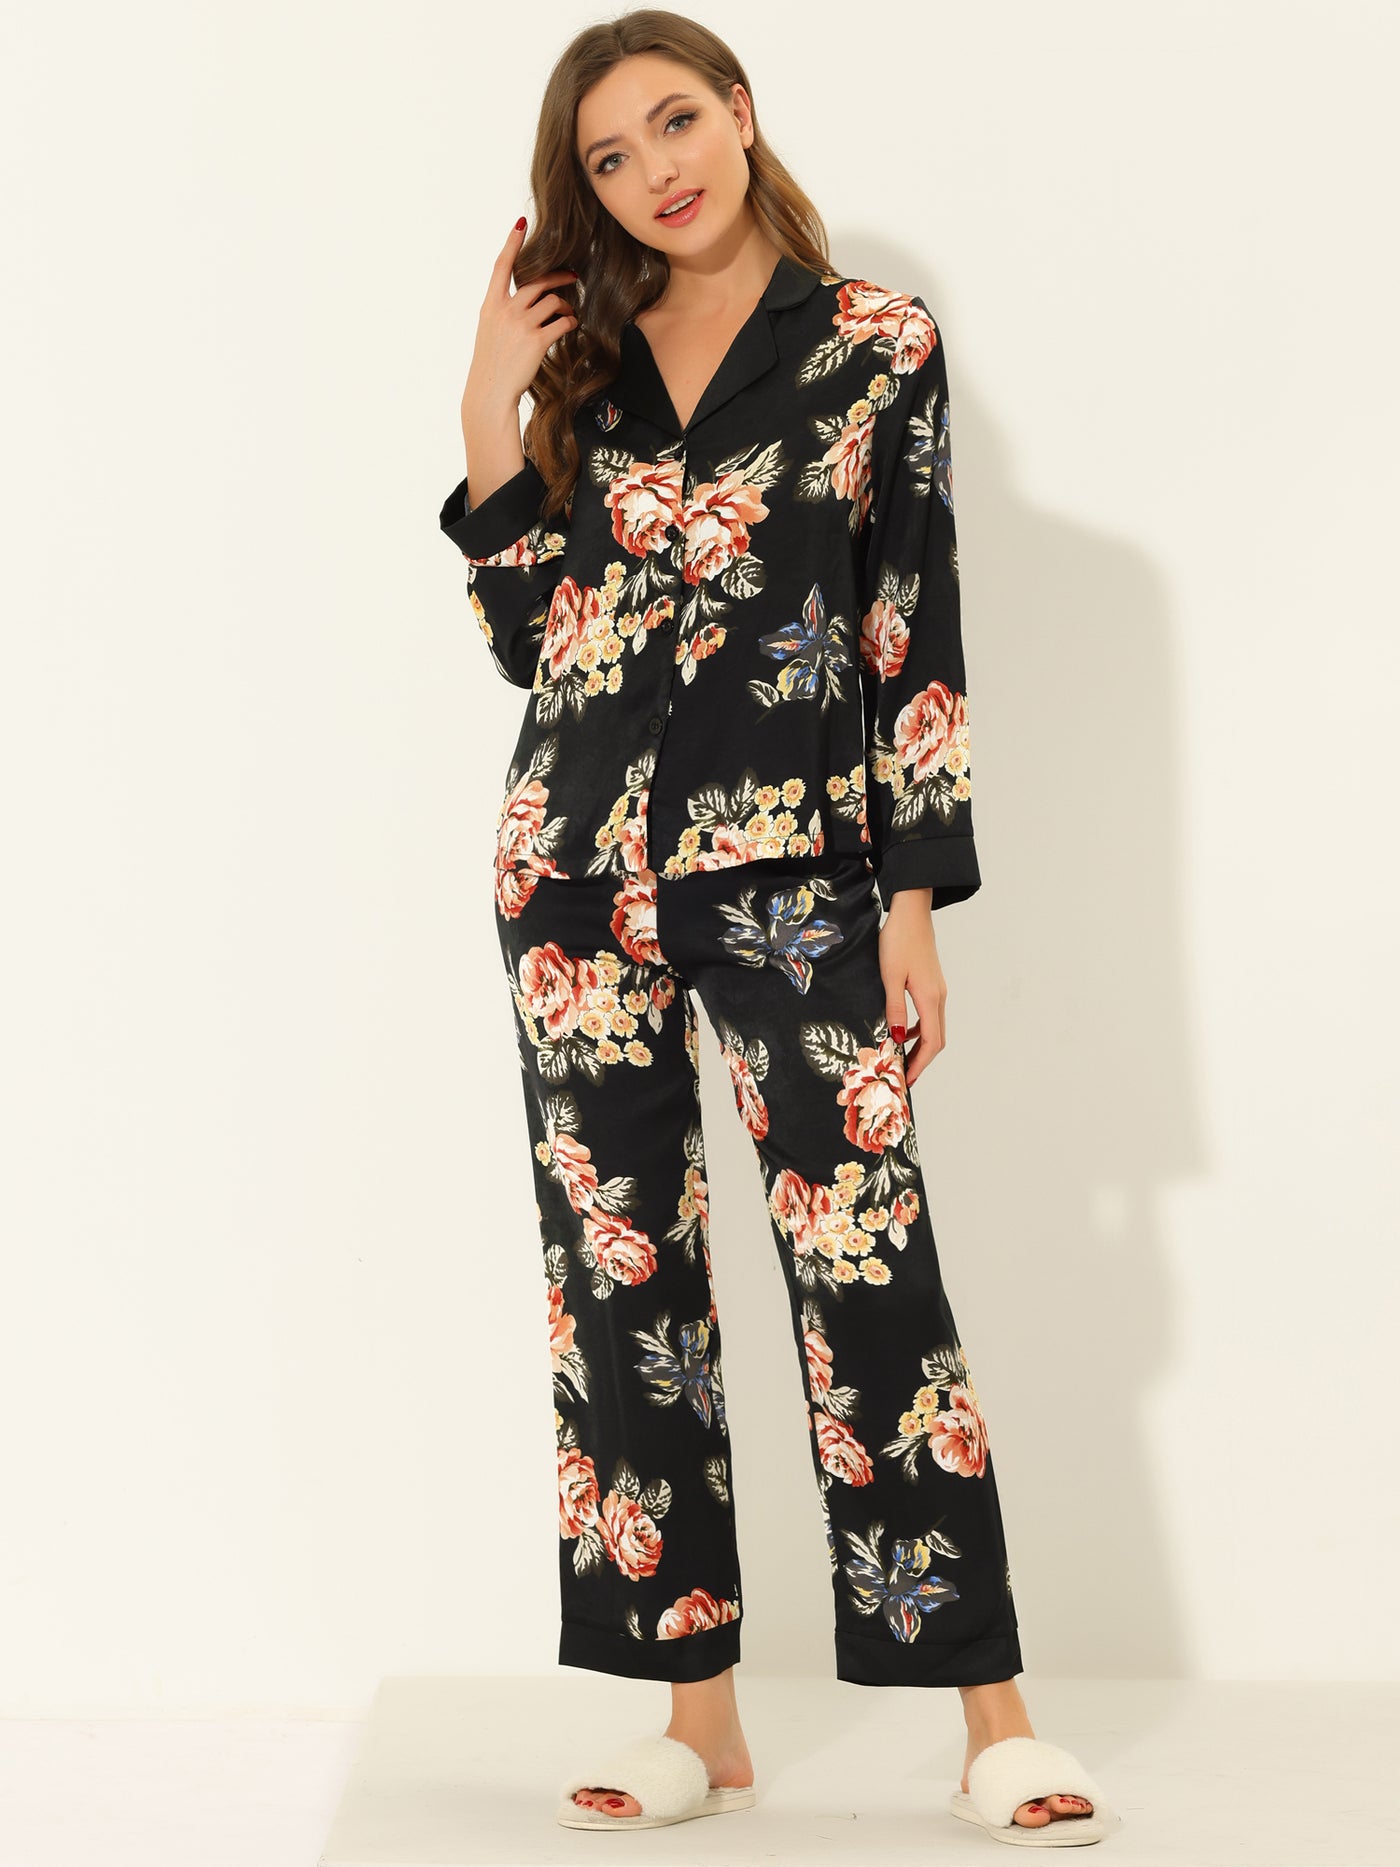 Bublédon Women's Floral Button Down Silk Sleepwear 2pcs Pajama Sets